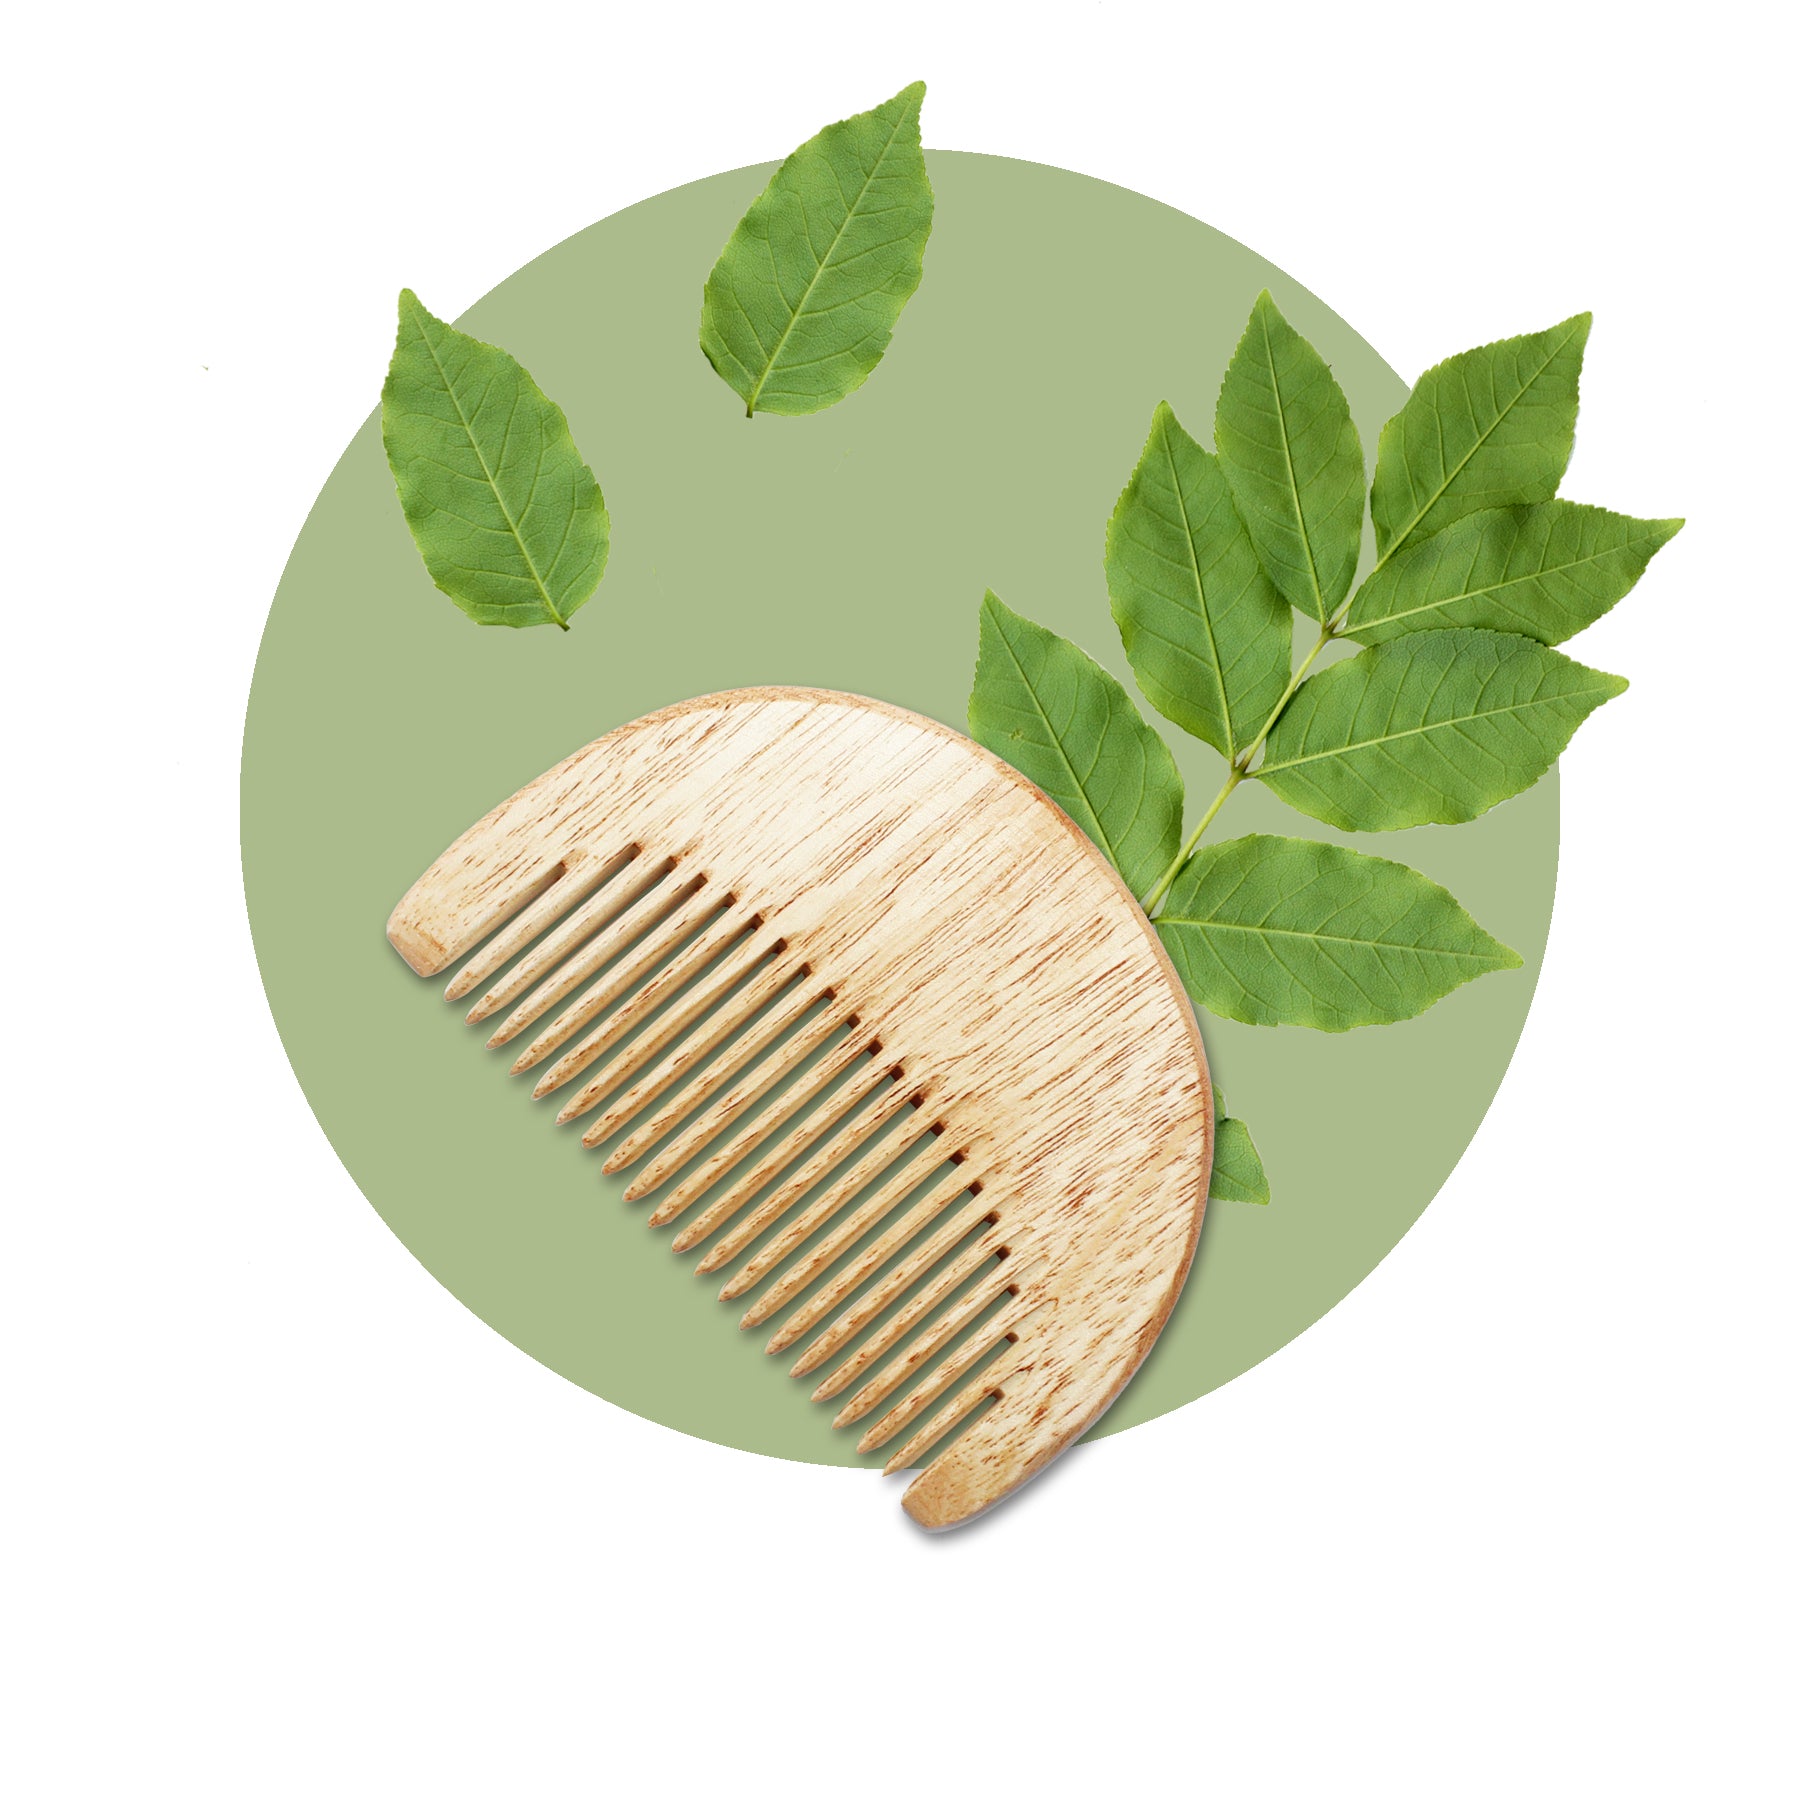 Peine para barba de madera de neem